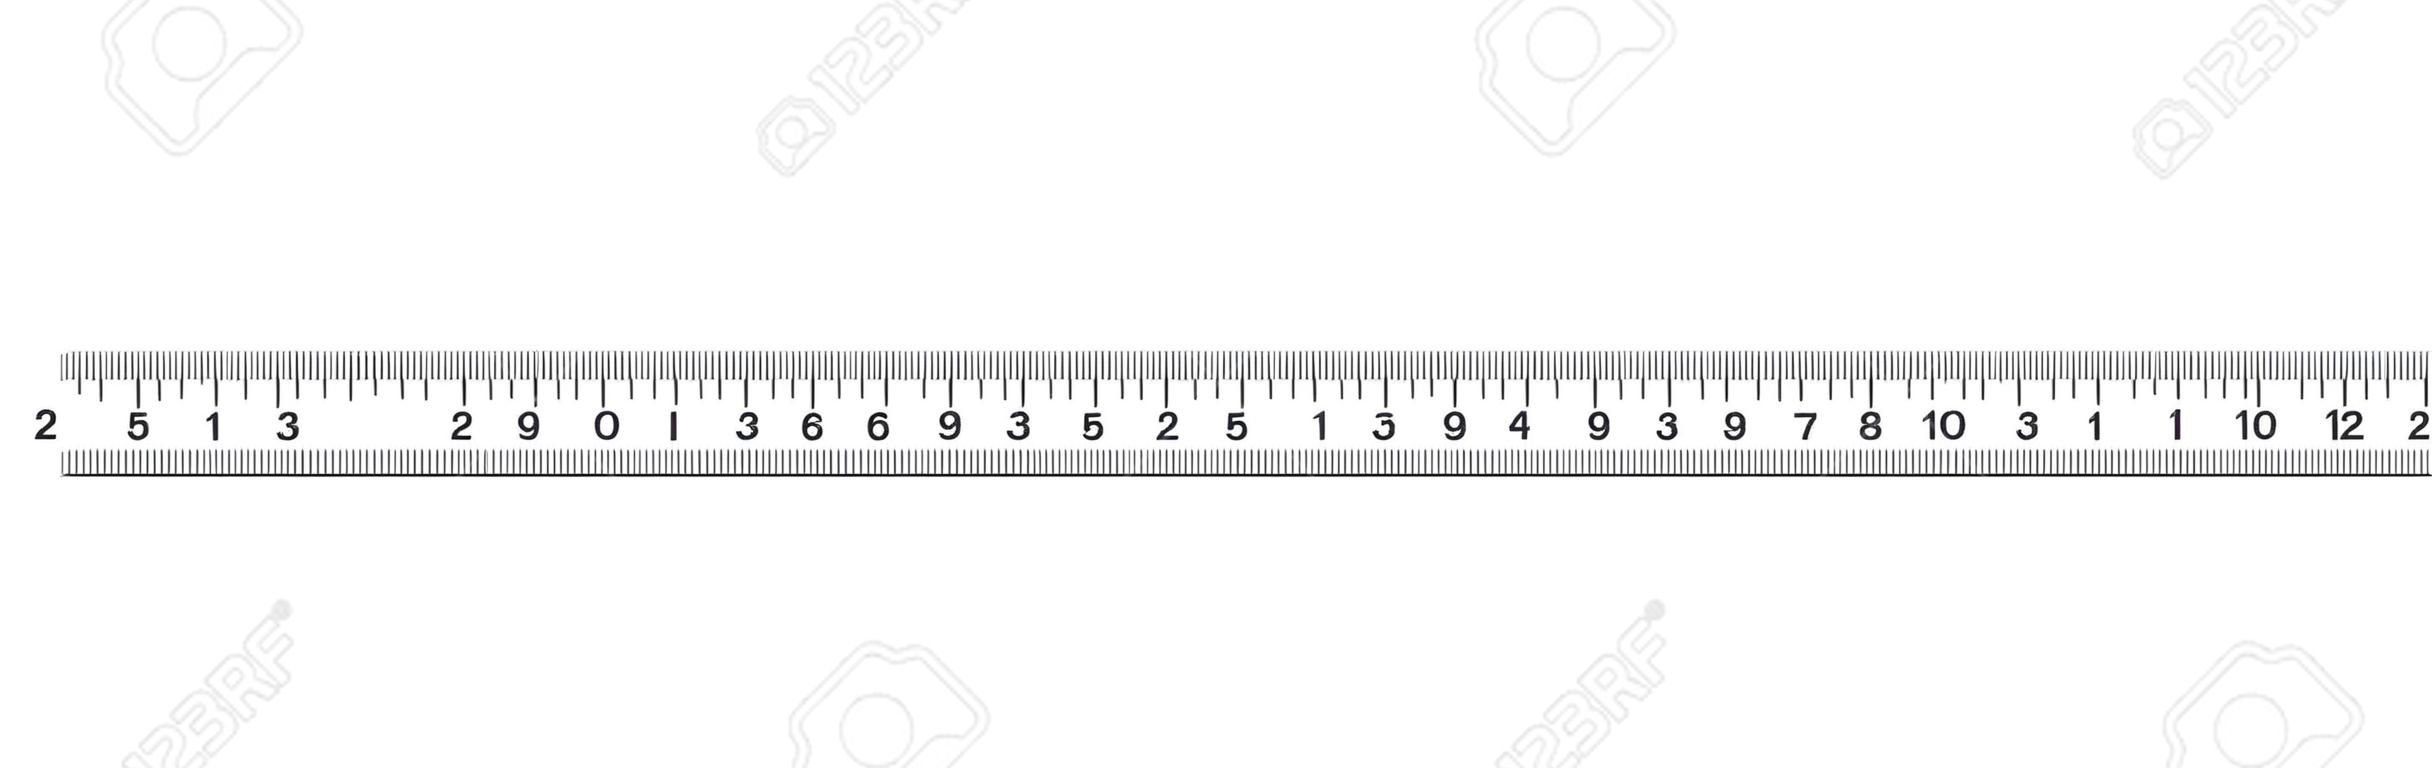 Liniaal 20 cm. Meetinstrument. Liniaal Afstuderen. Liniaalrooster 20 en 1 cm. Afmetingsmeter eenheden. Metrische Centimeter maatindicatoren. Vector EPS10